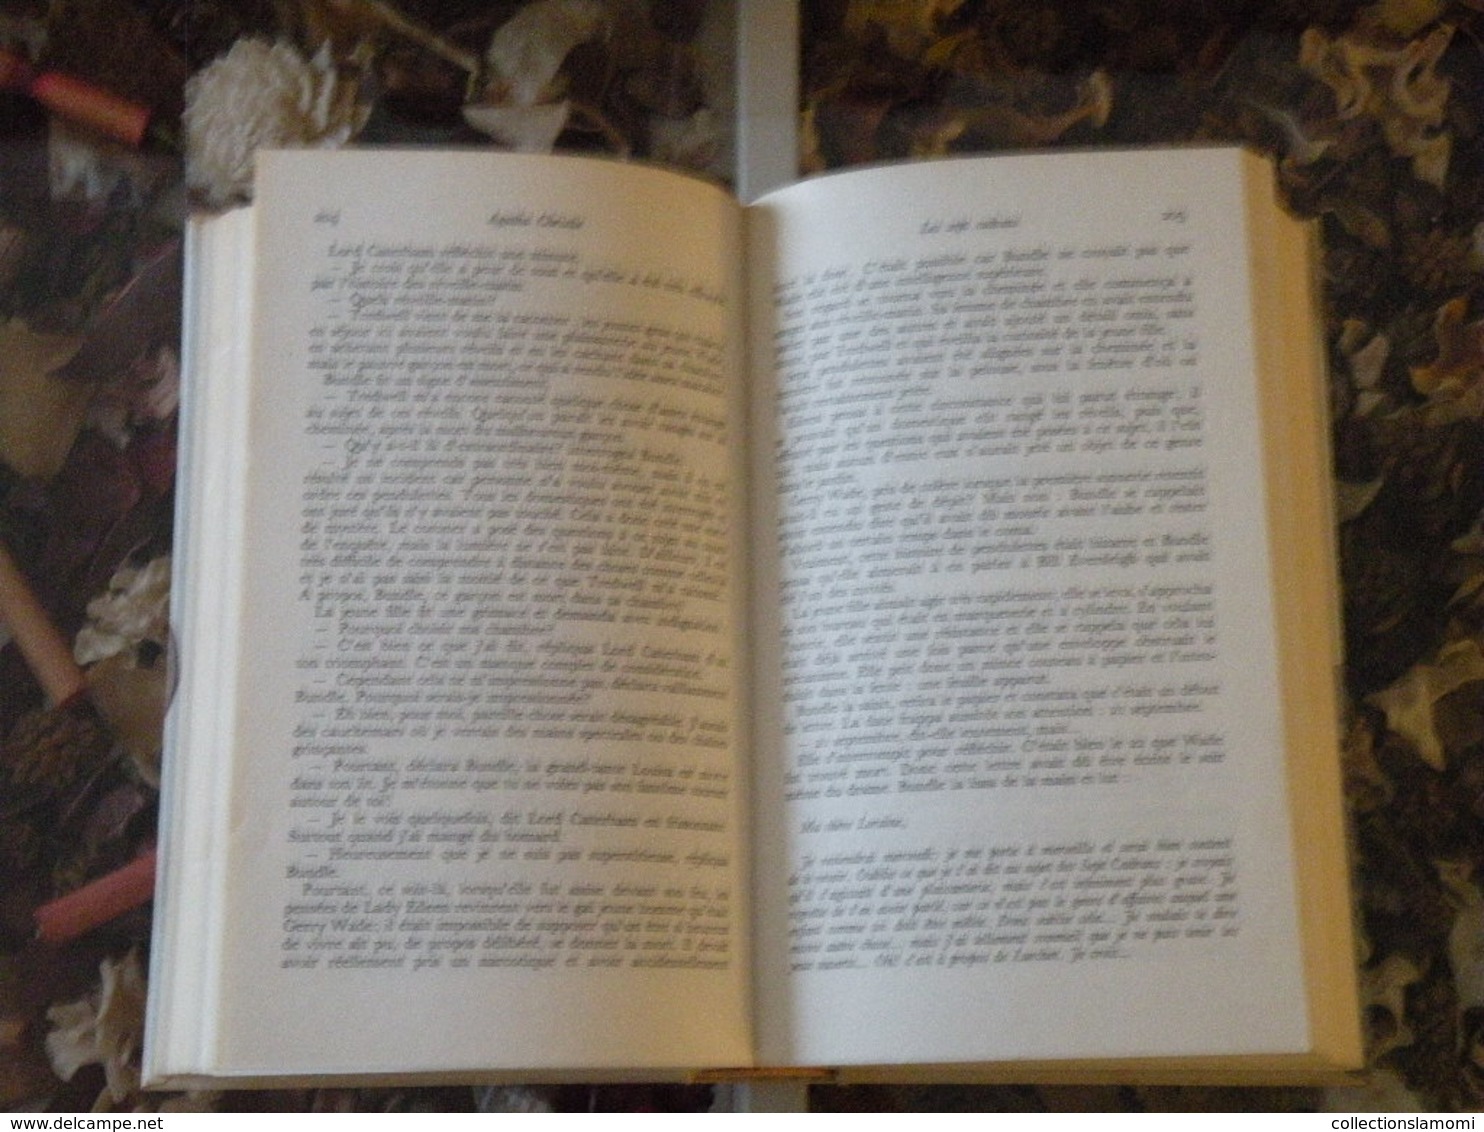 Lots de 14 livres Agatha Christie,les titres sont directement à voir sur les photos (Attention manque le n°7)